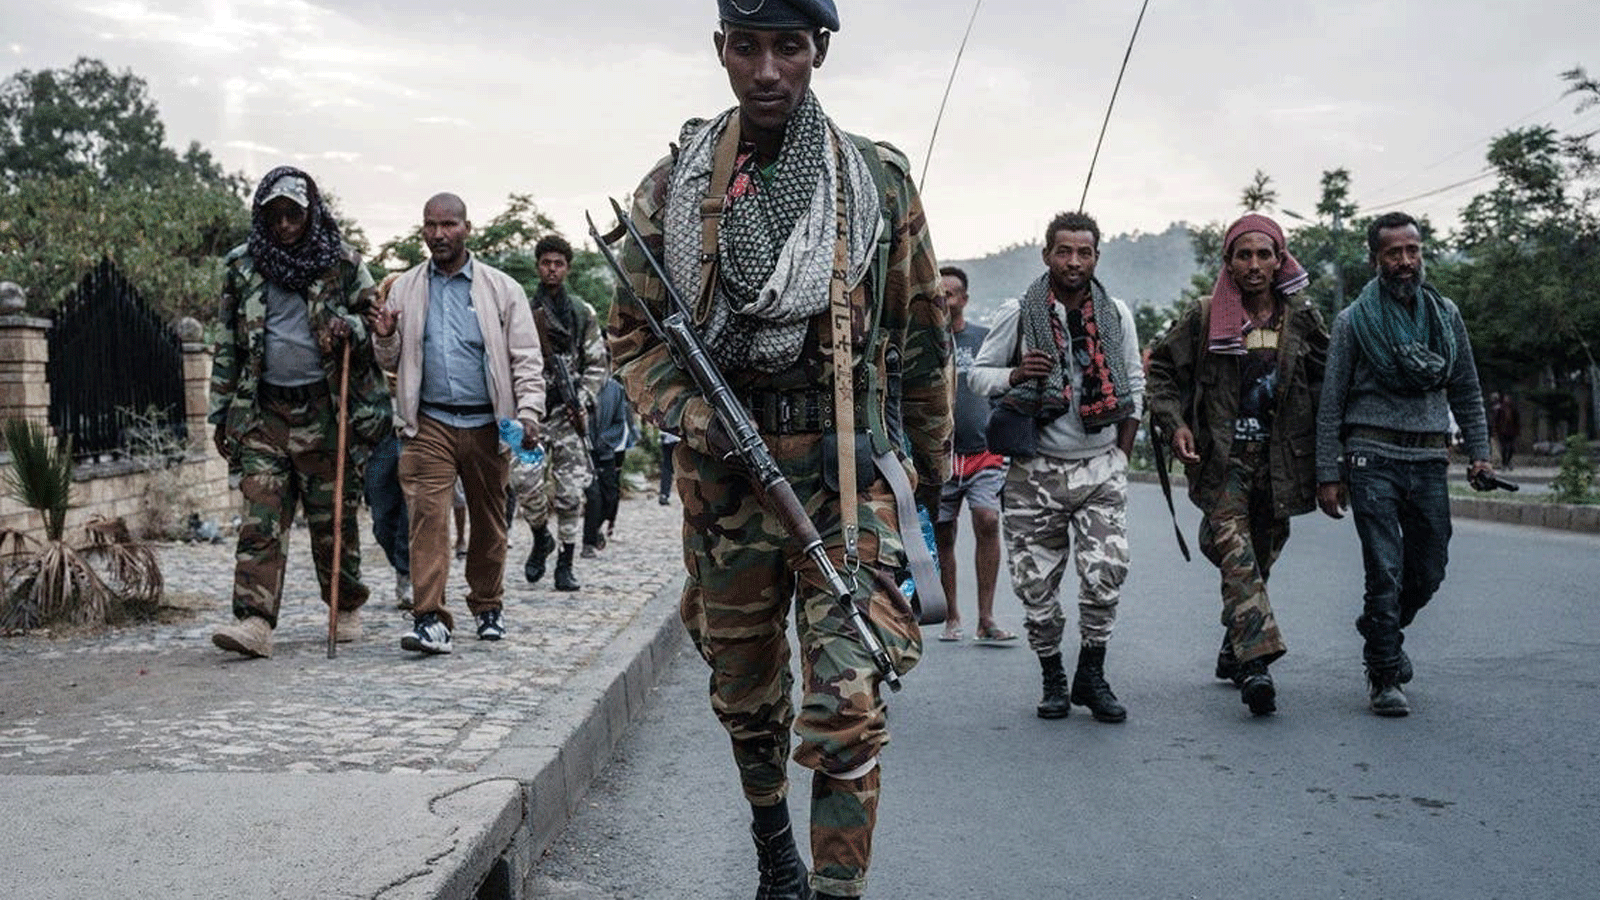 صورة التُقِطَت في 29 حزيران/ يونيو 2021 لمتمردين مؤيدين لـ TPLF (جبهة تحرير شعب تيغراي) يصلون بعد ثماني ساعات من المشي في ميكيلي، عاصمة منطقة تيغراي في إثيوبيا.